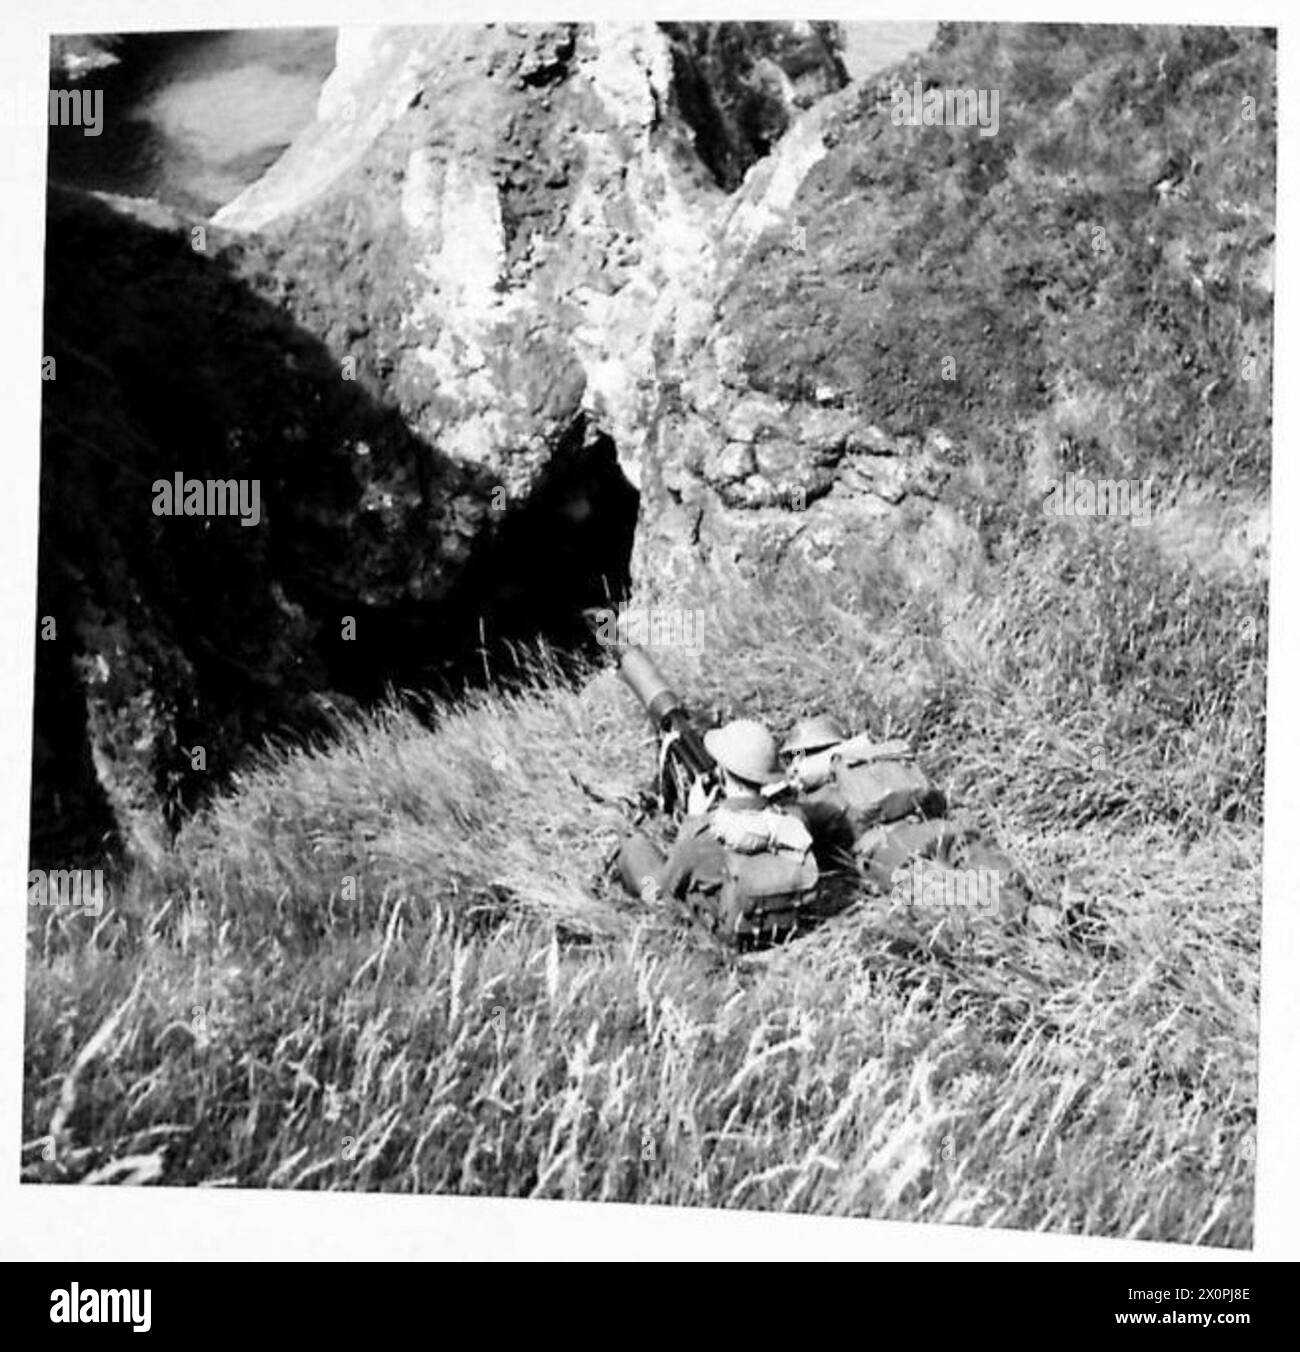 ENTRAÎNEMENT AUX MITRAILLEUSES - mitrailleuse en position défensive sur une partie accidentée de la côte nord-irlandaise. Négatif photographique, Armée britannique Banque D'Images